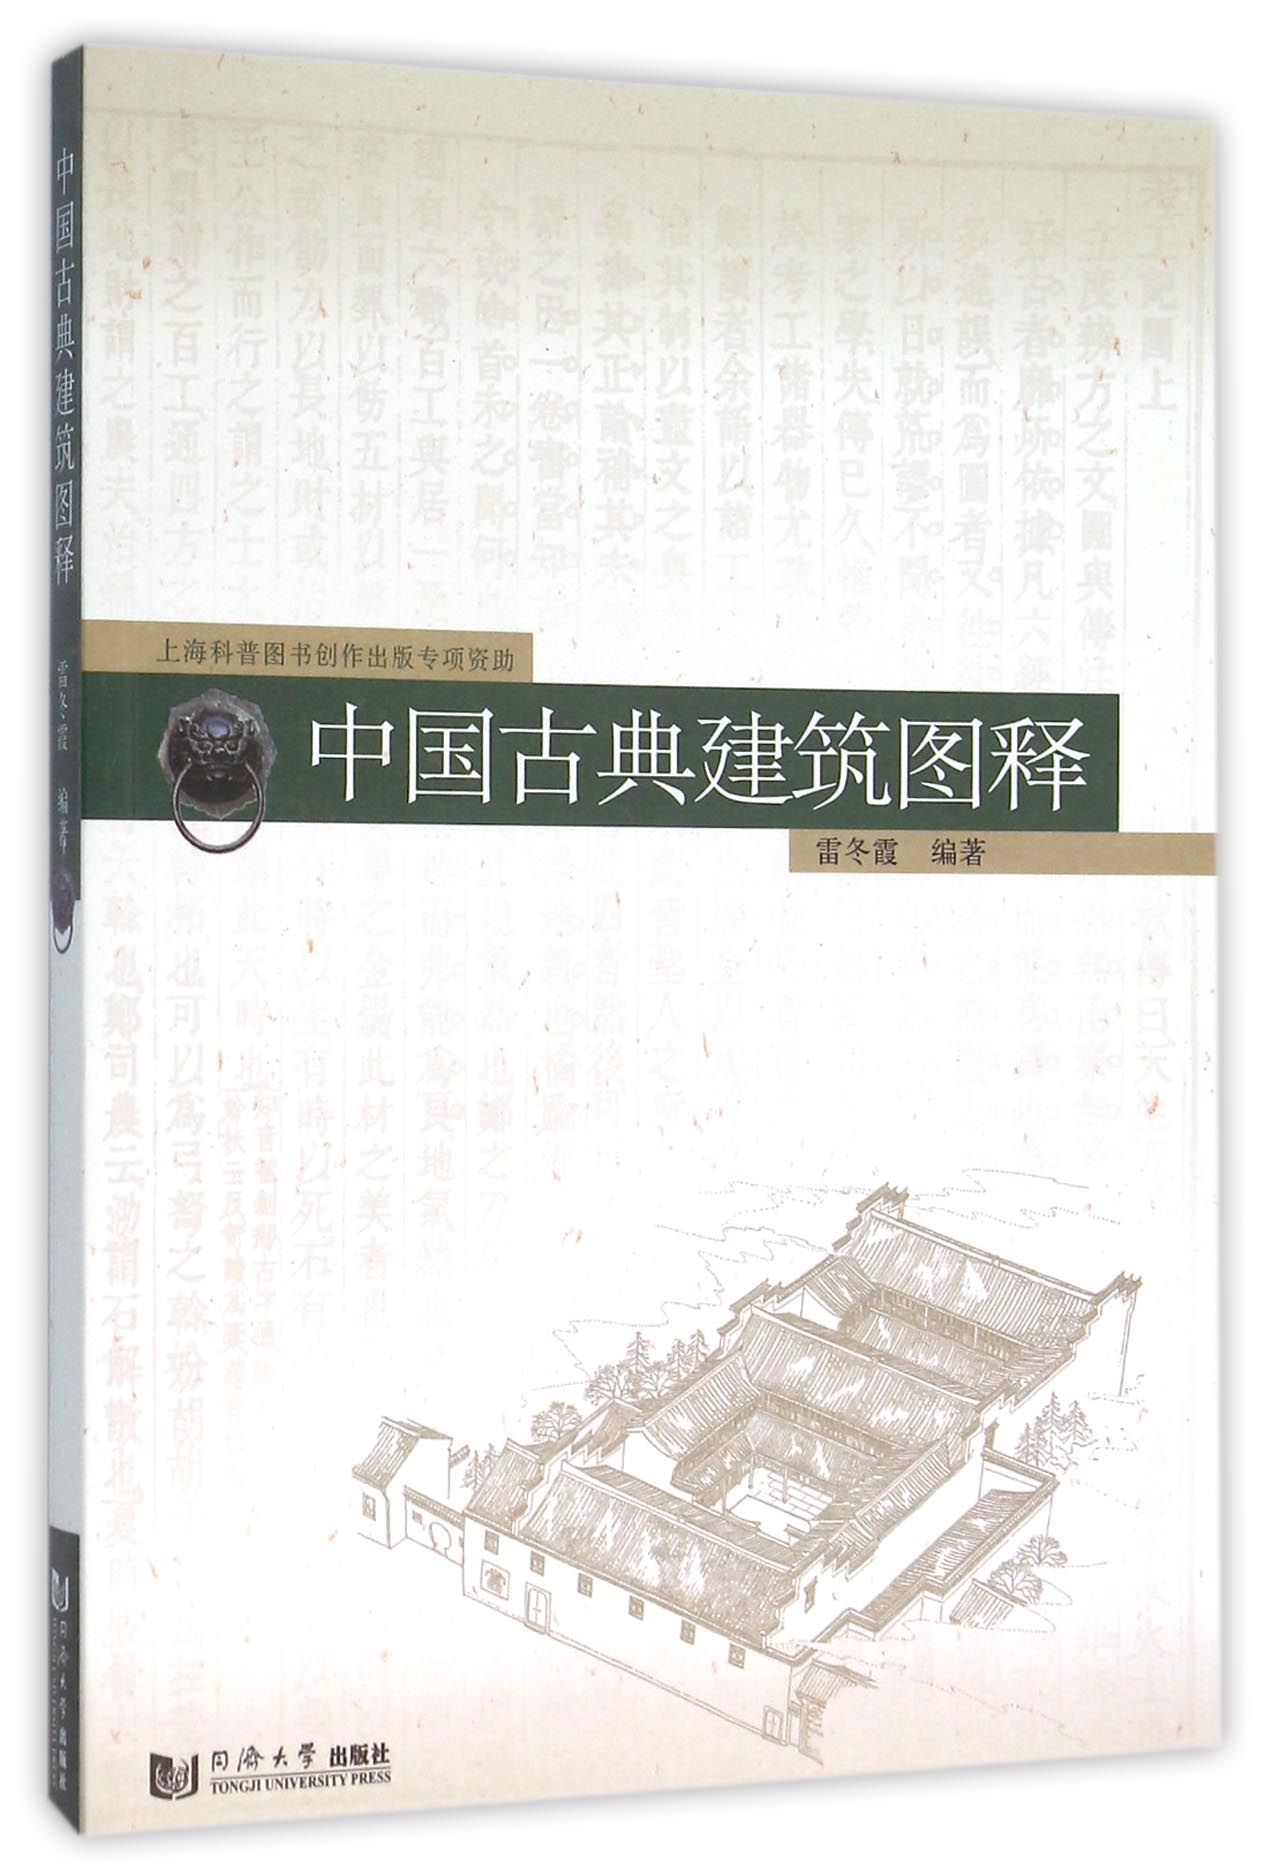 中国古典建筑图释 azw3格式下载